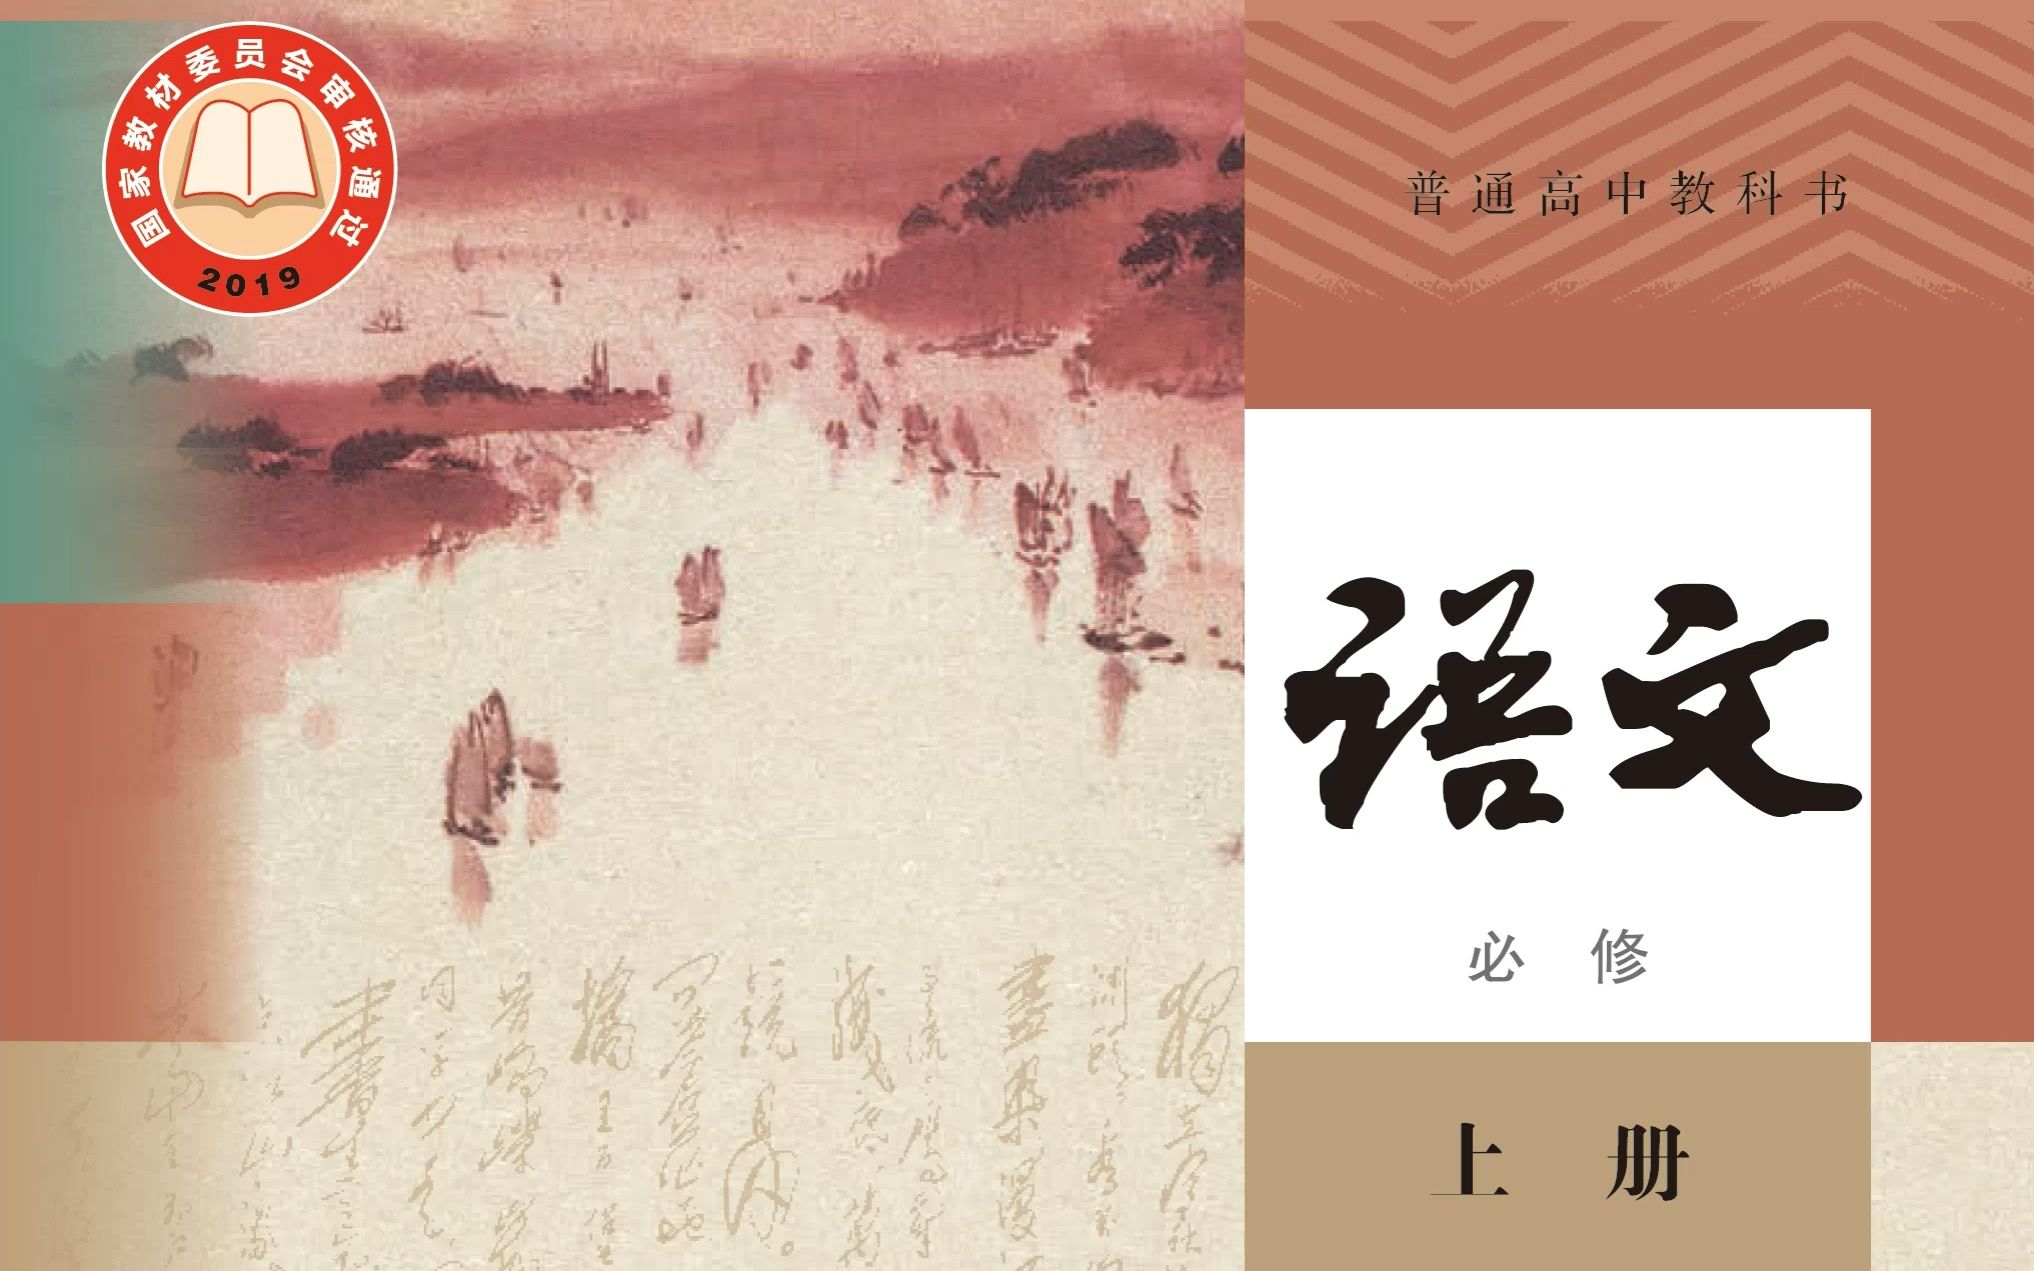 两岸高中语文教科書最新版比较 大陆人教版VS台湾翰林版